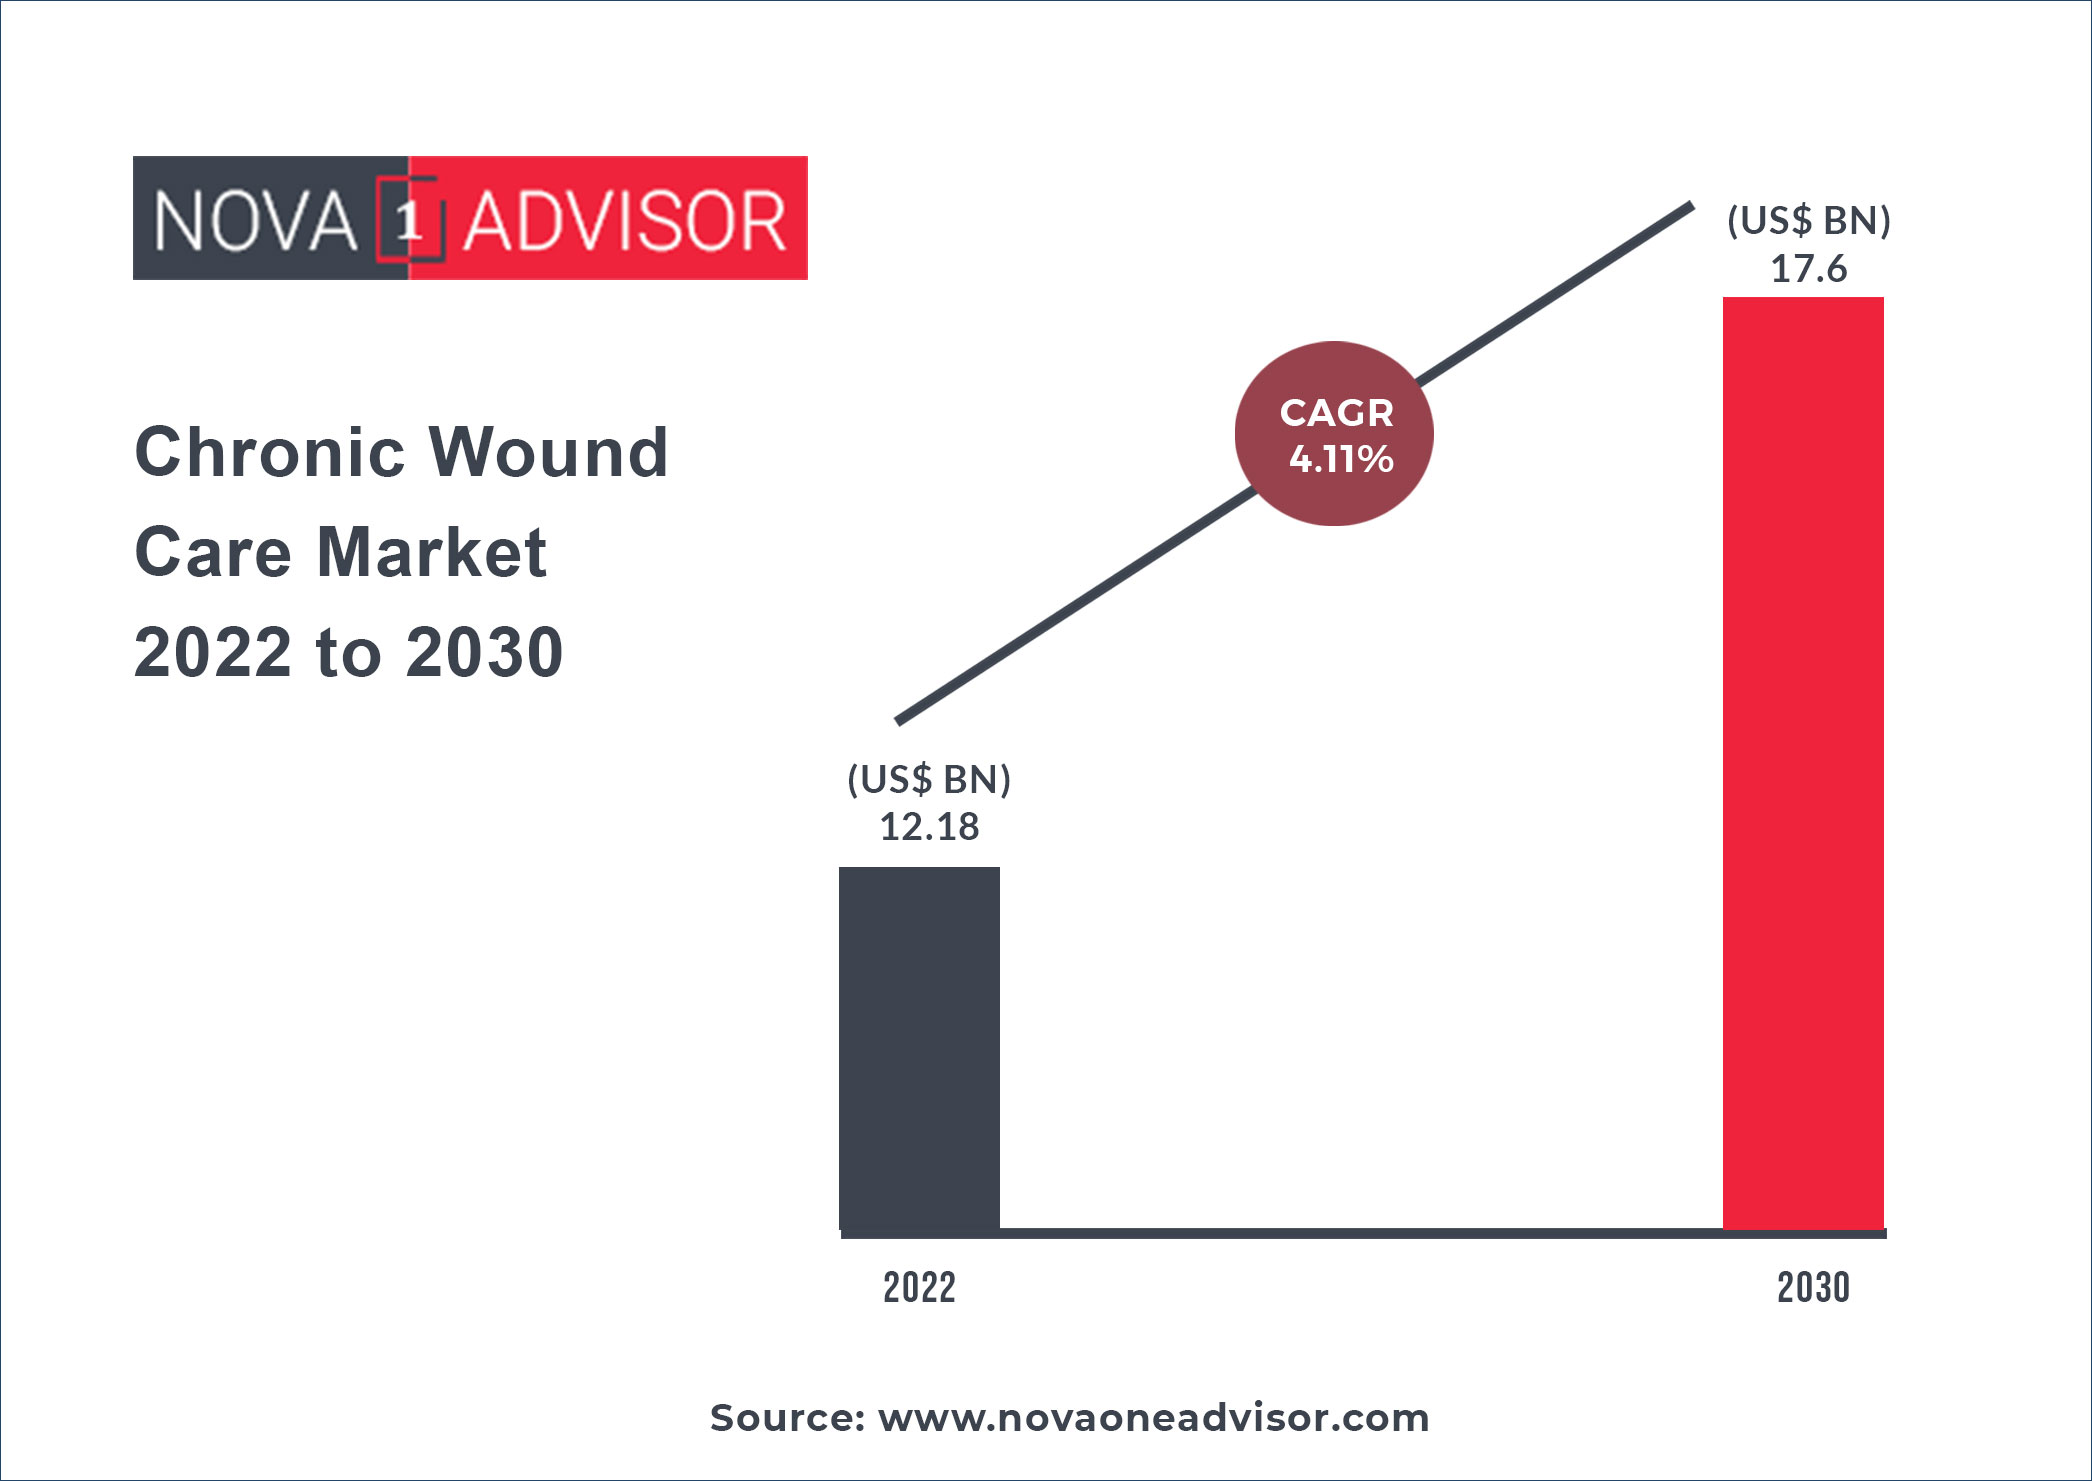 https://www.novaoneadvisor.com/reportimg/Chronic-Wound-Care-Market-2022-to-2030.jpg